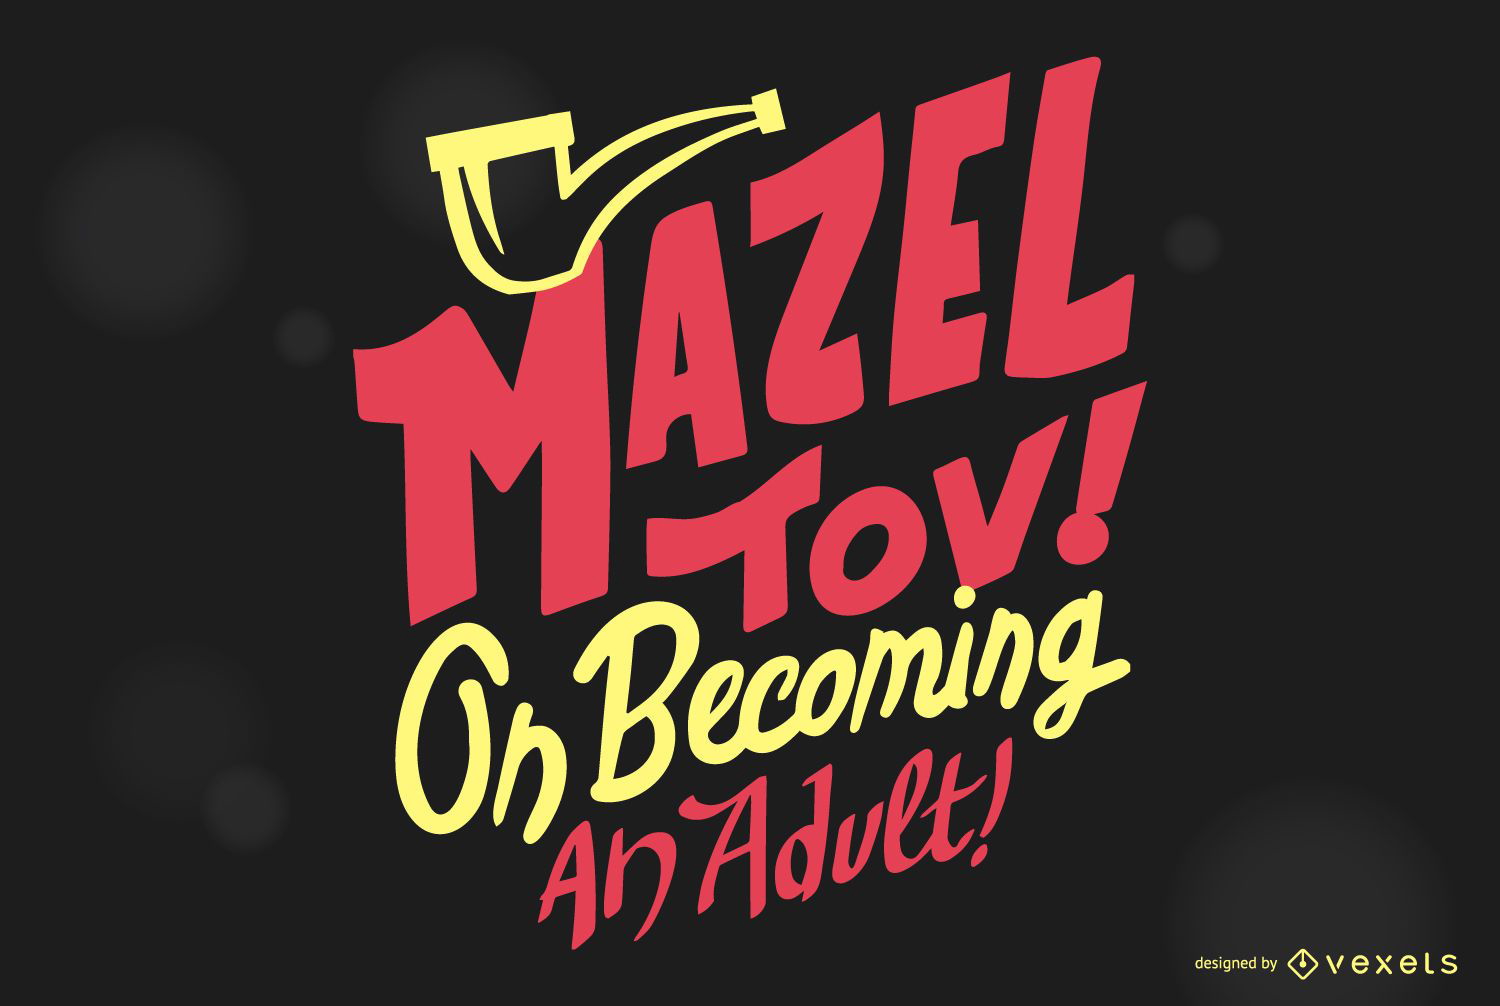 Mazel tov bar mitzvah lettering design